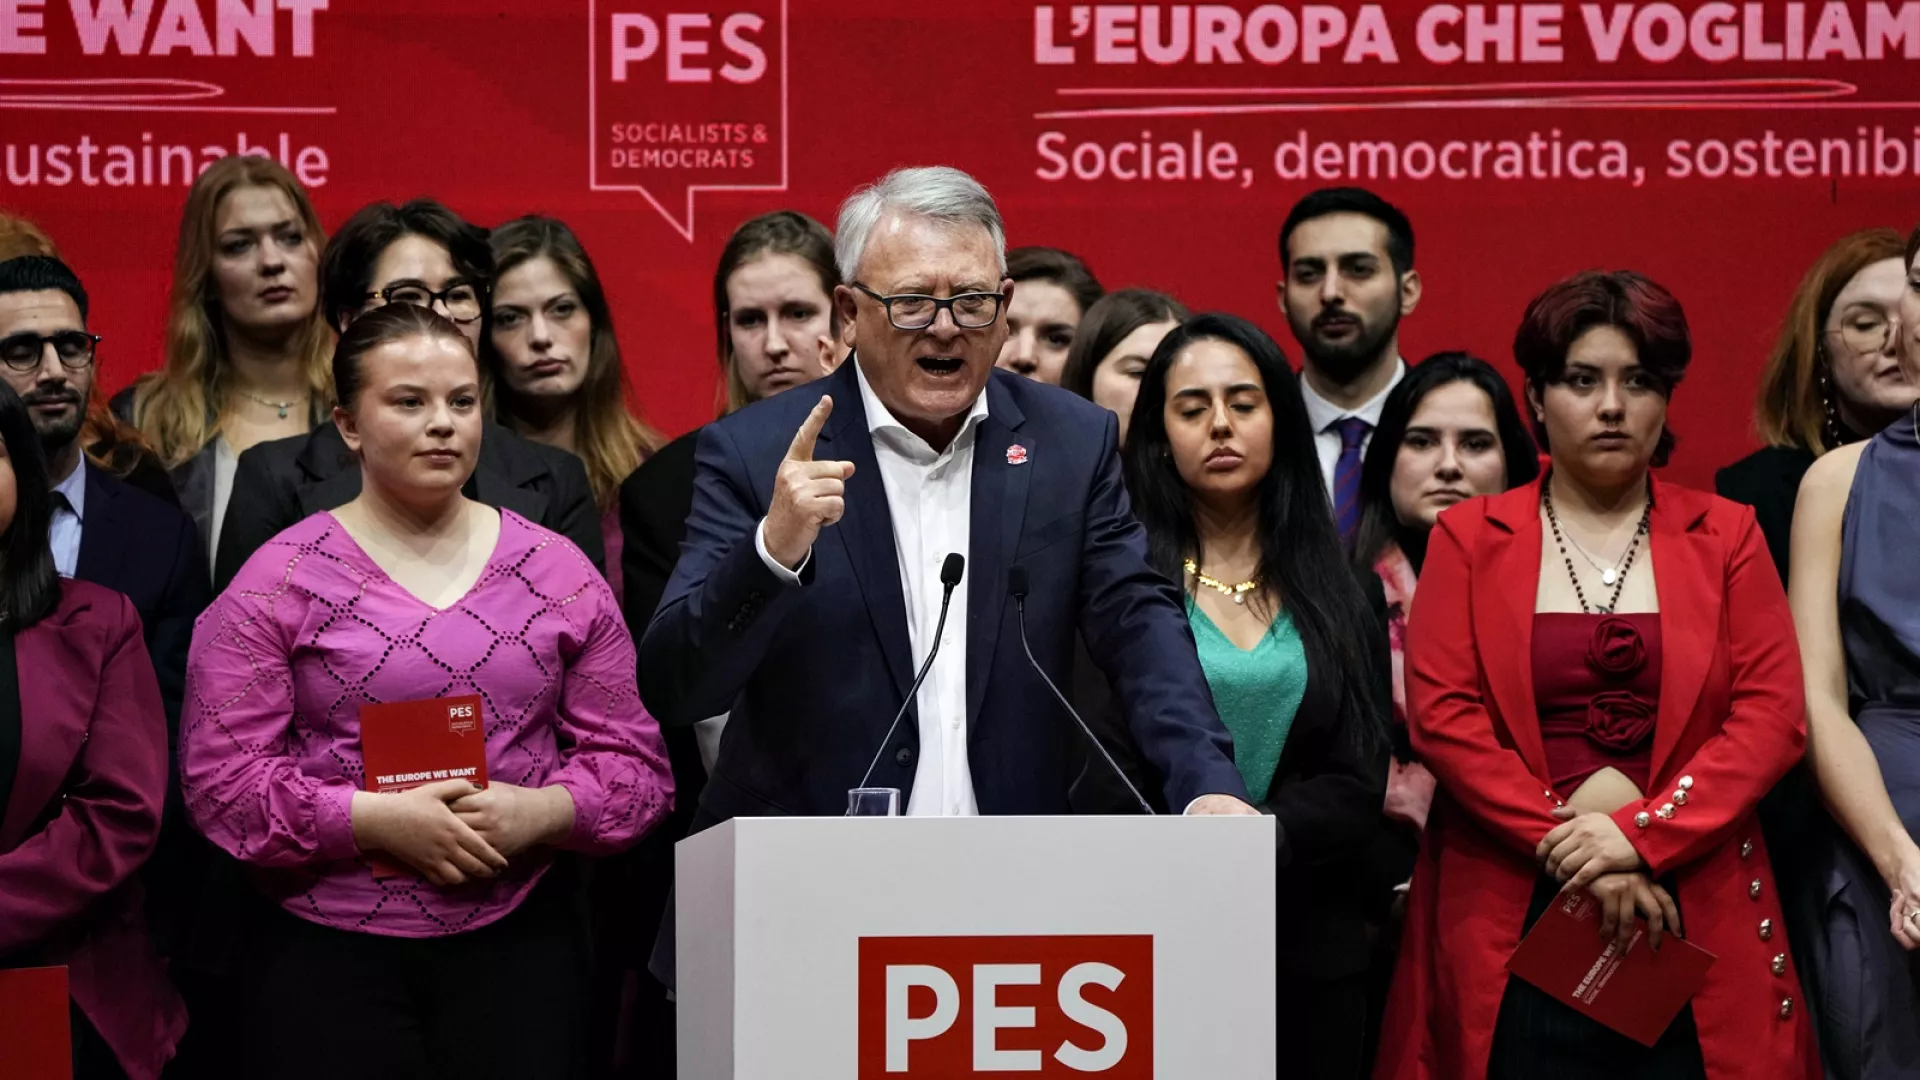 Socialistët evropianë zgjedhin Nicolas Schmit si kandidat kryesor për t'u përballur me Ursula von der Leyen